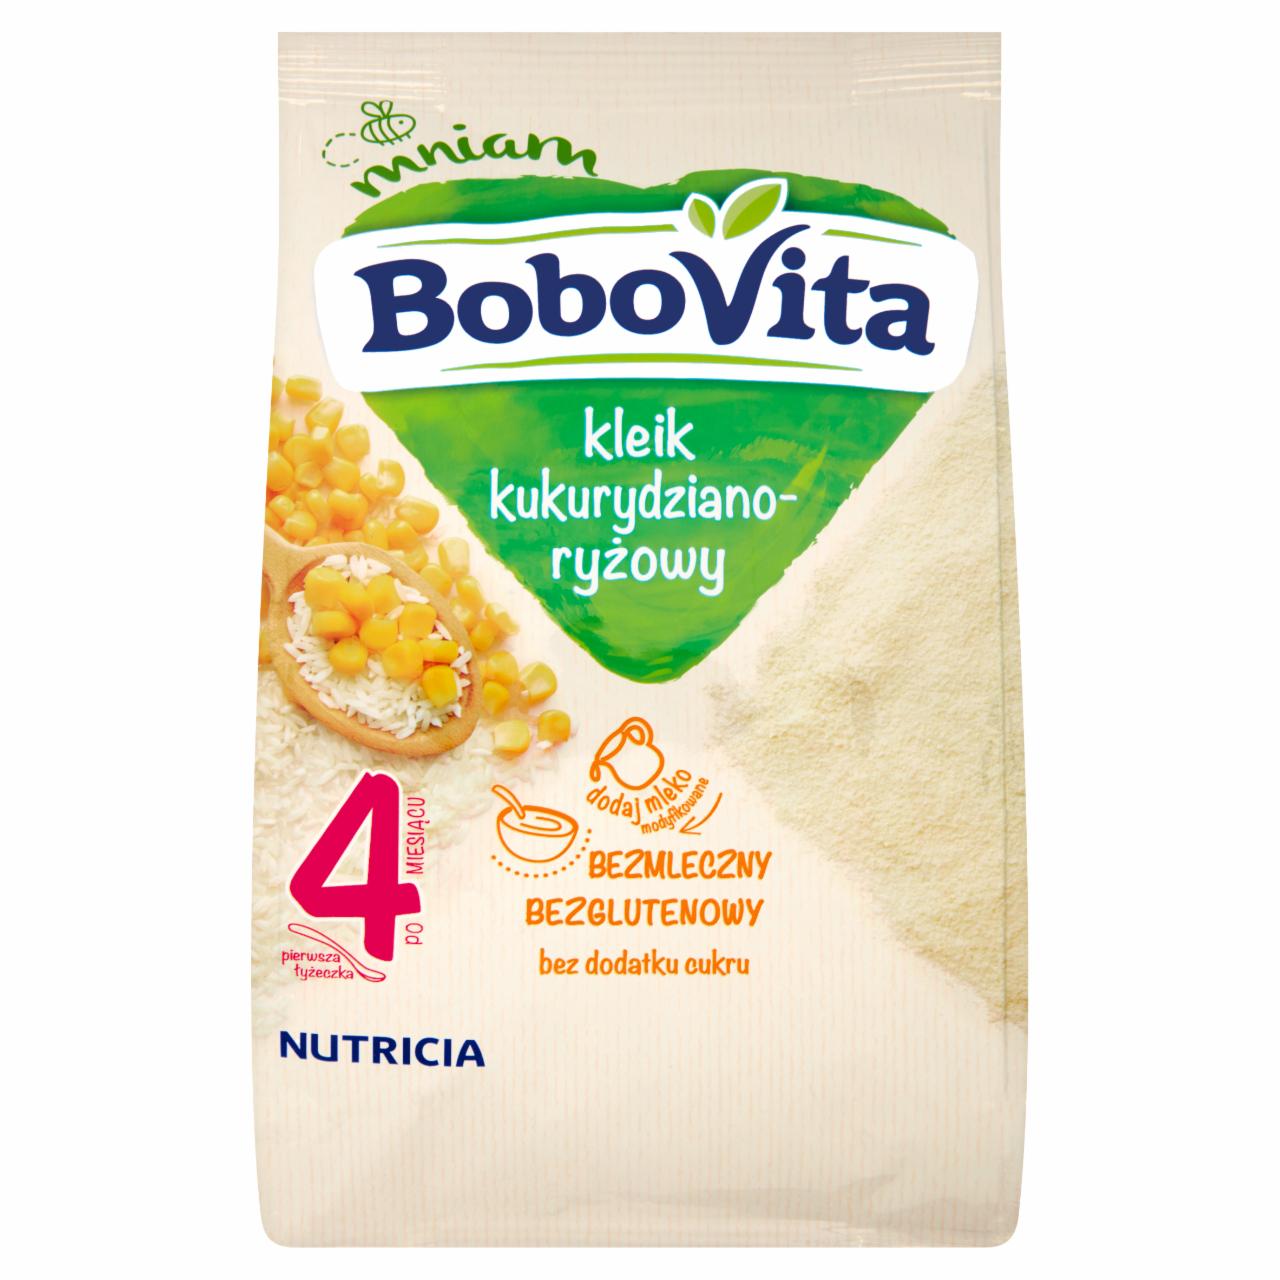 Zdjęcia - BoboVita Kleik kukurydziano-ryżowy po 4 miesiącu 150 g